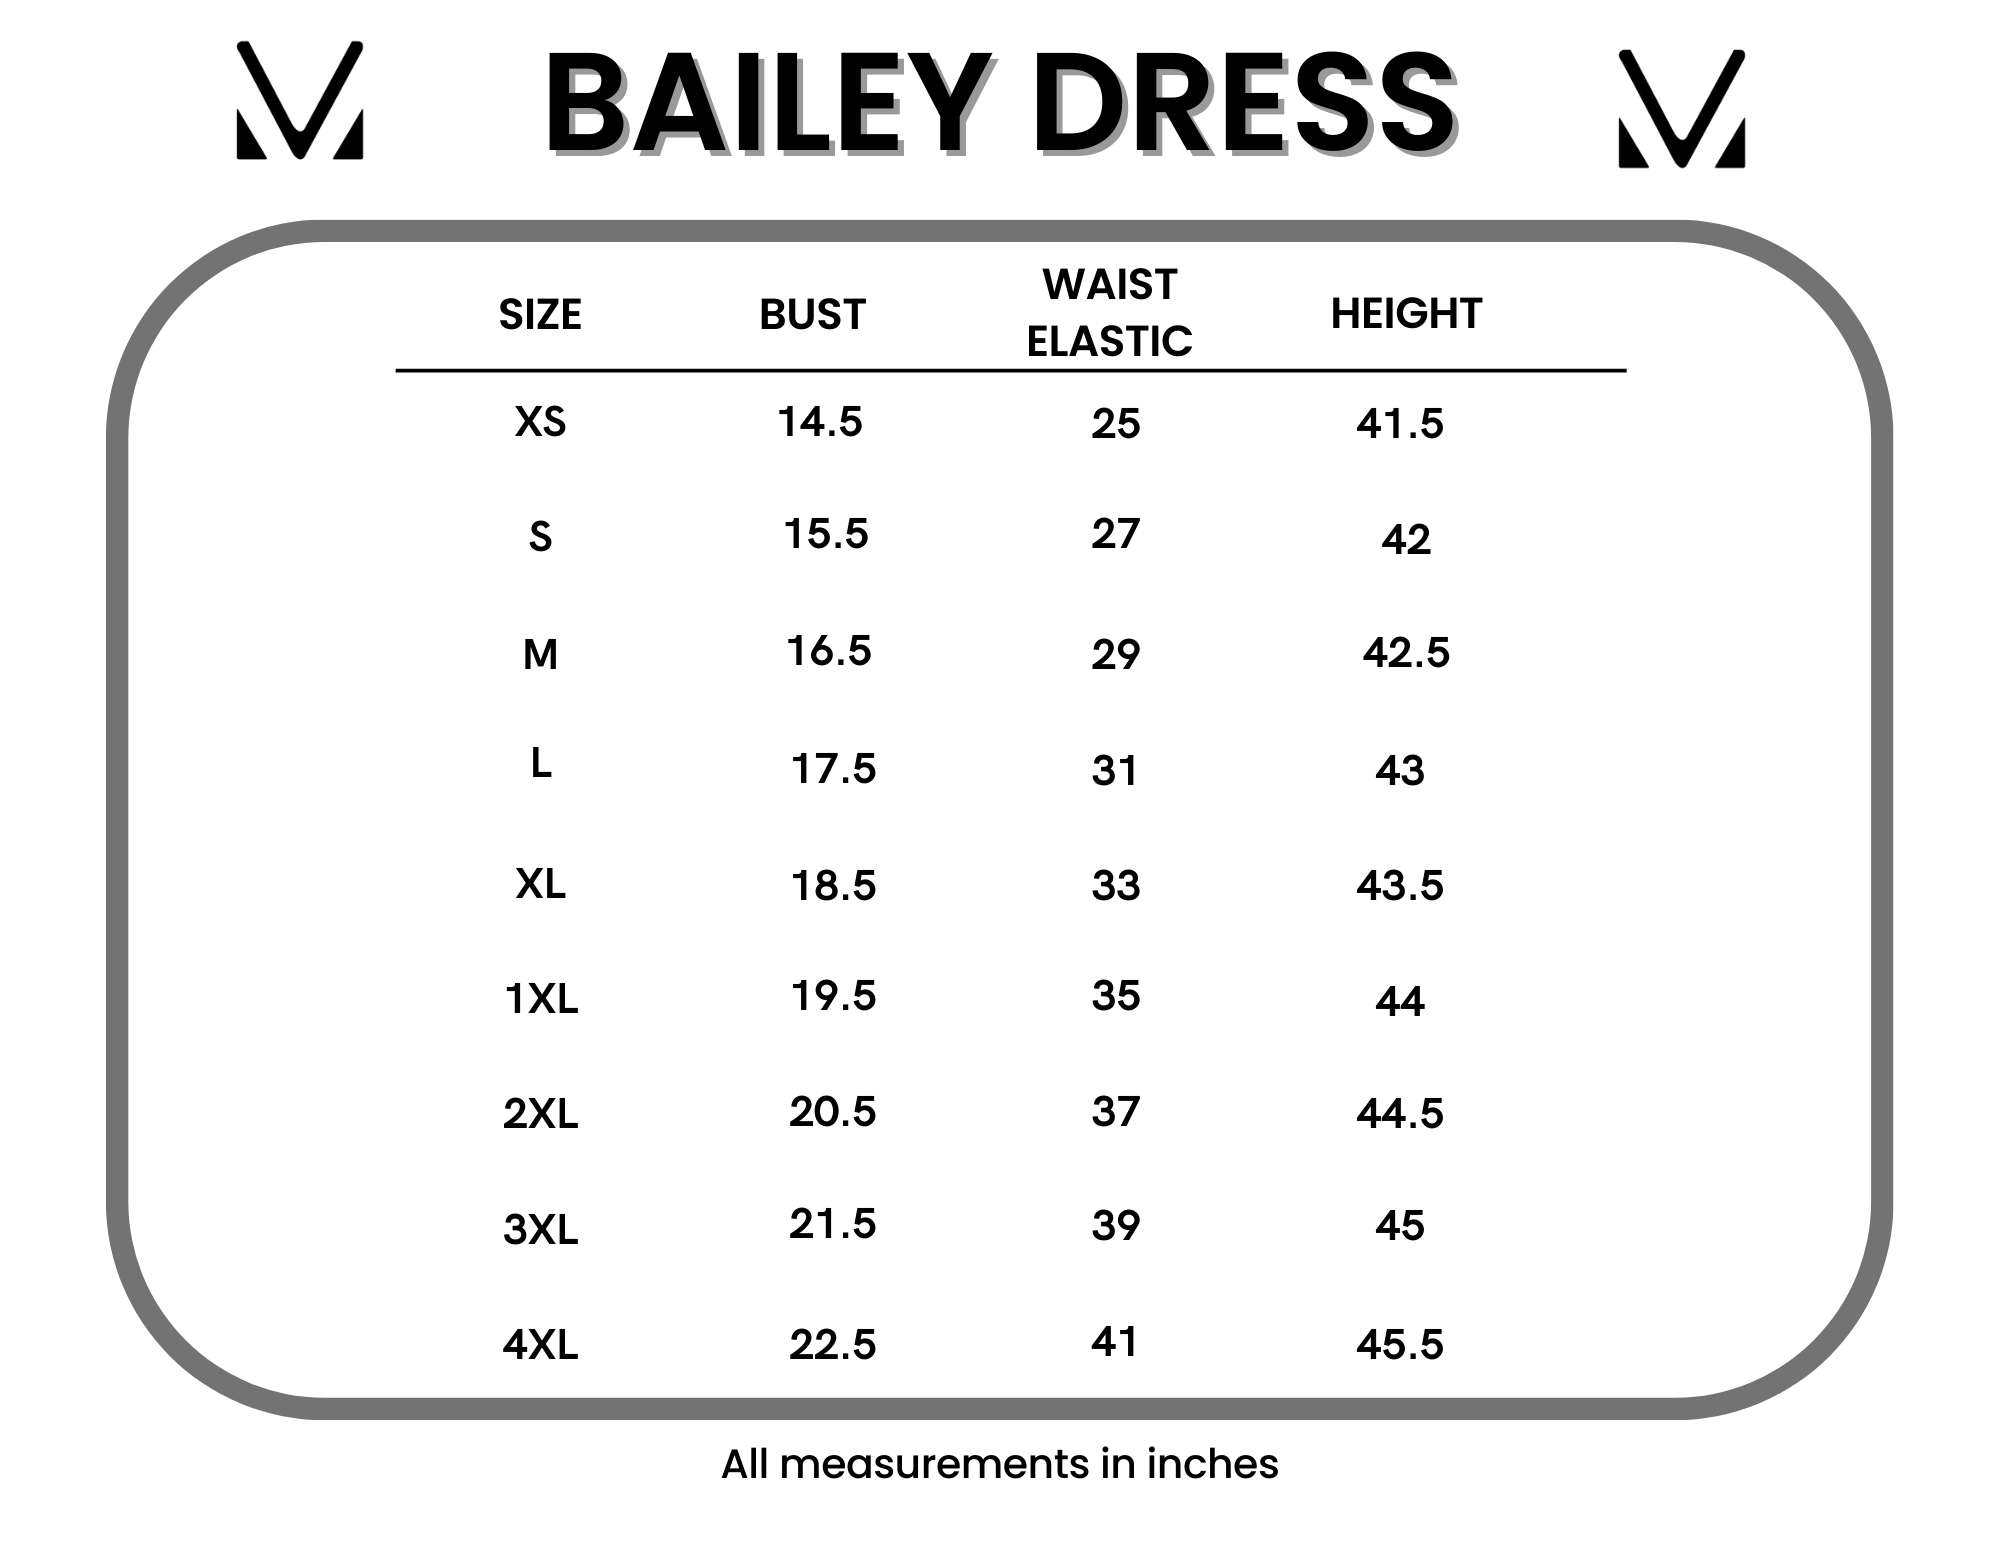 Bailey Dress - Pink Dot